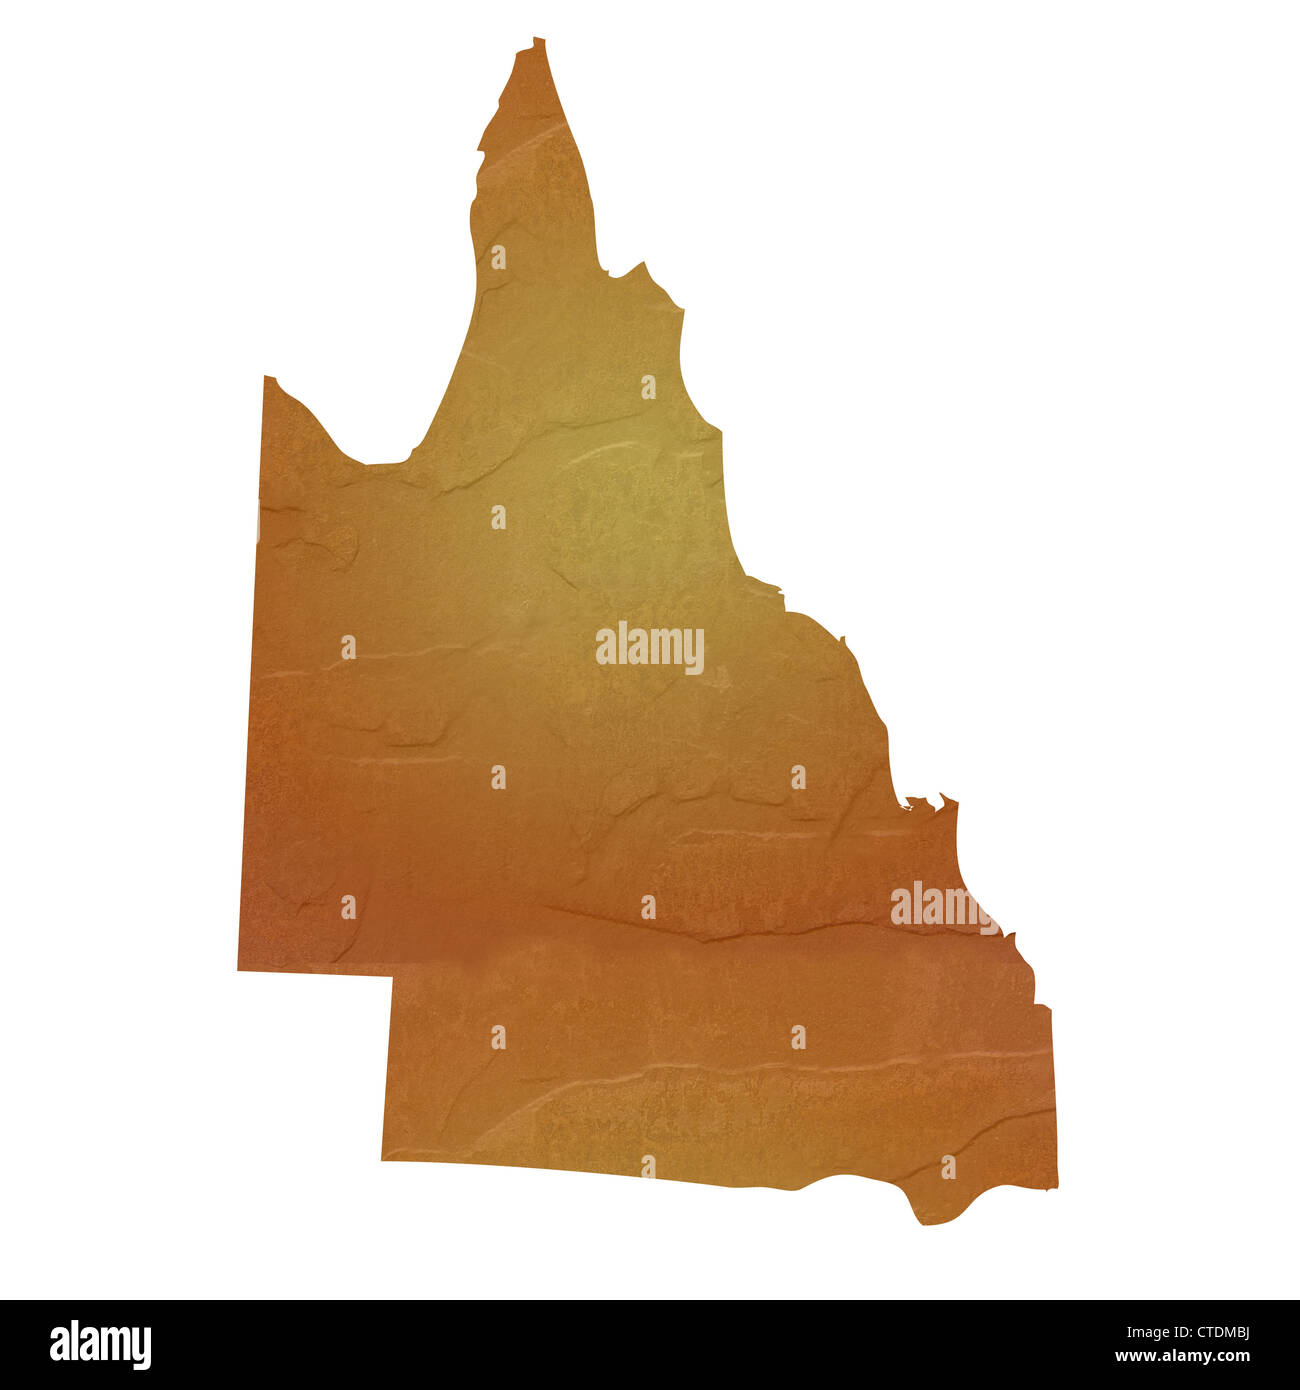 Queensland Australia mapa marrón con textura de roca o piedra, aislado sobre fondo blanco con trazado de recorte. Foto de stock